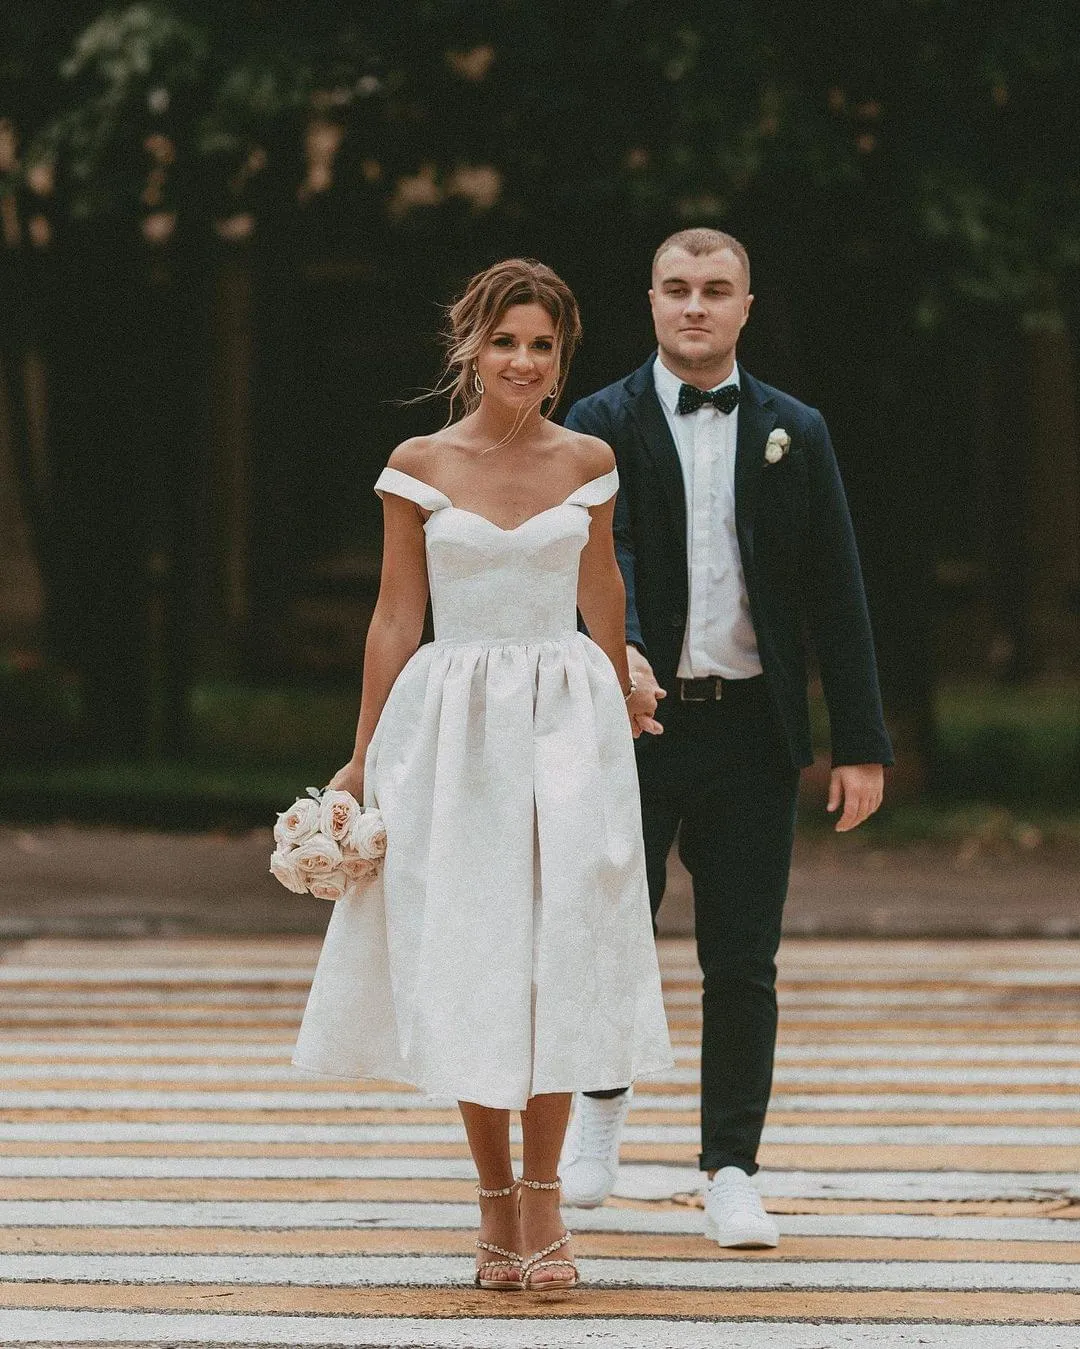 свадебный образ невесты без свадебного платья на свадьбу